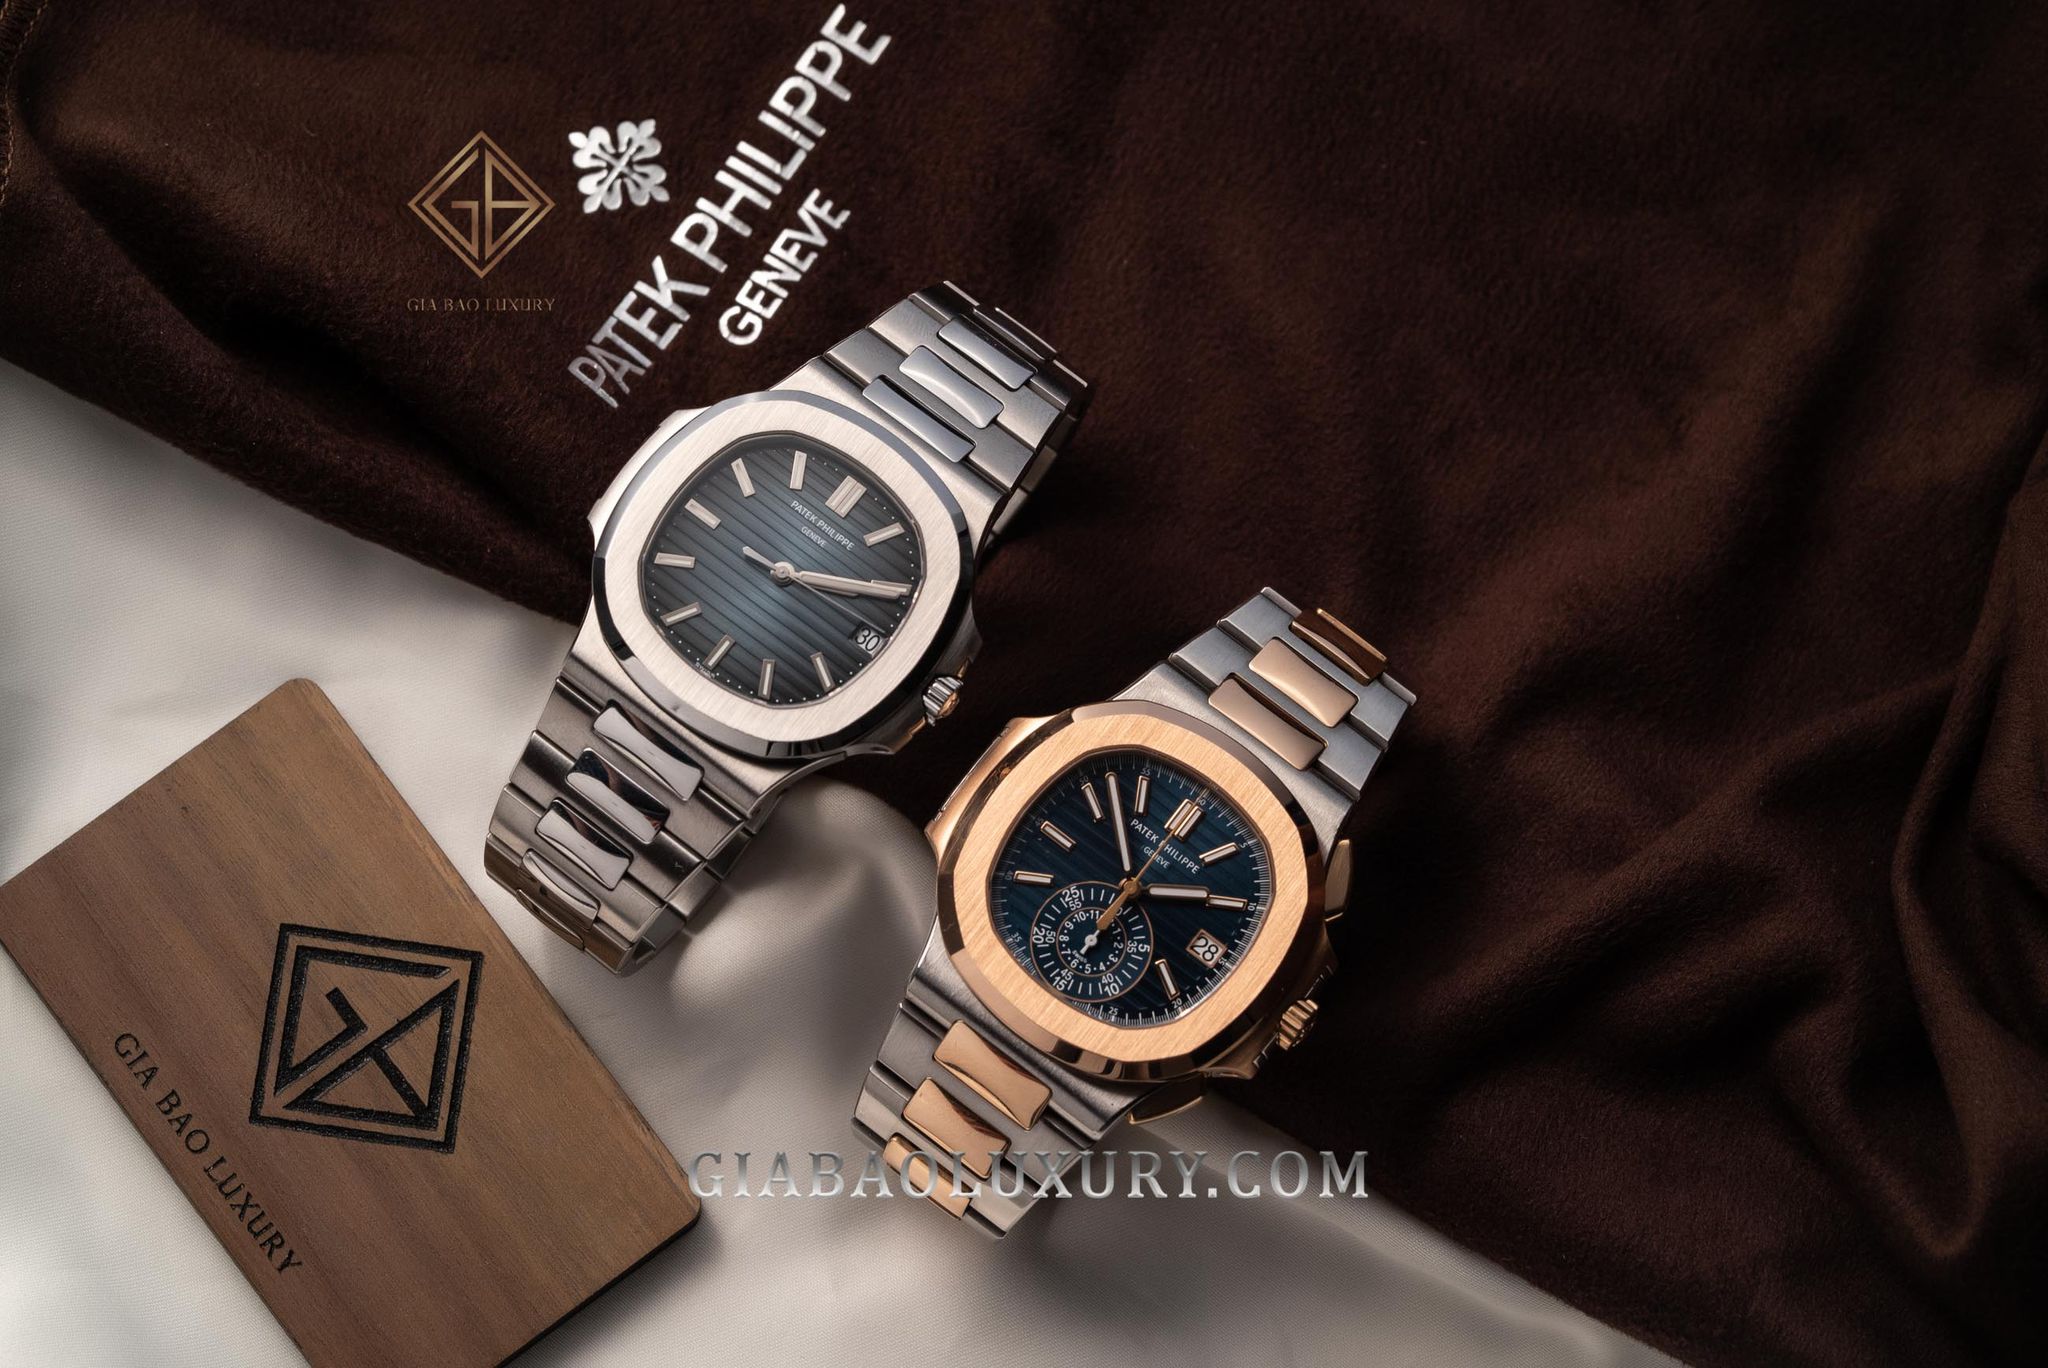 Thương hiệu Patek Philippe ngừng sản xuất Nautilus 5711/1A-010 và 16 mẫu đồng hồ khác